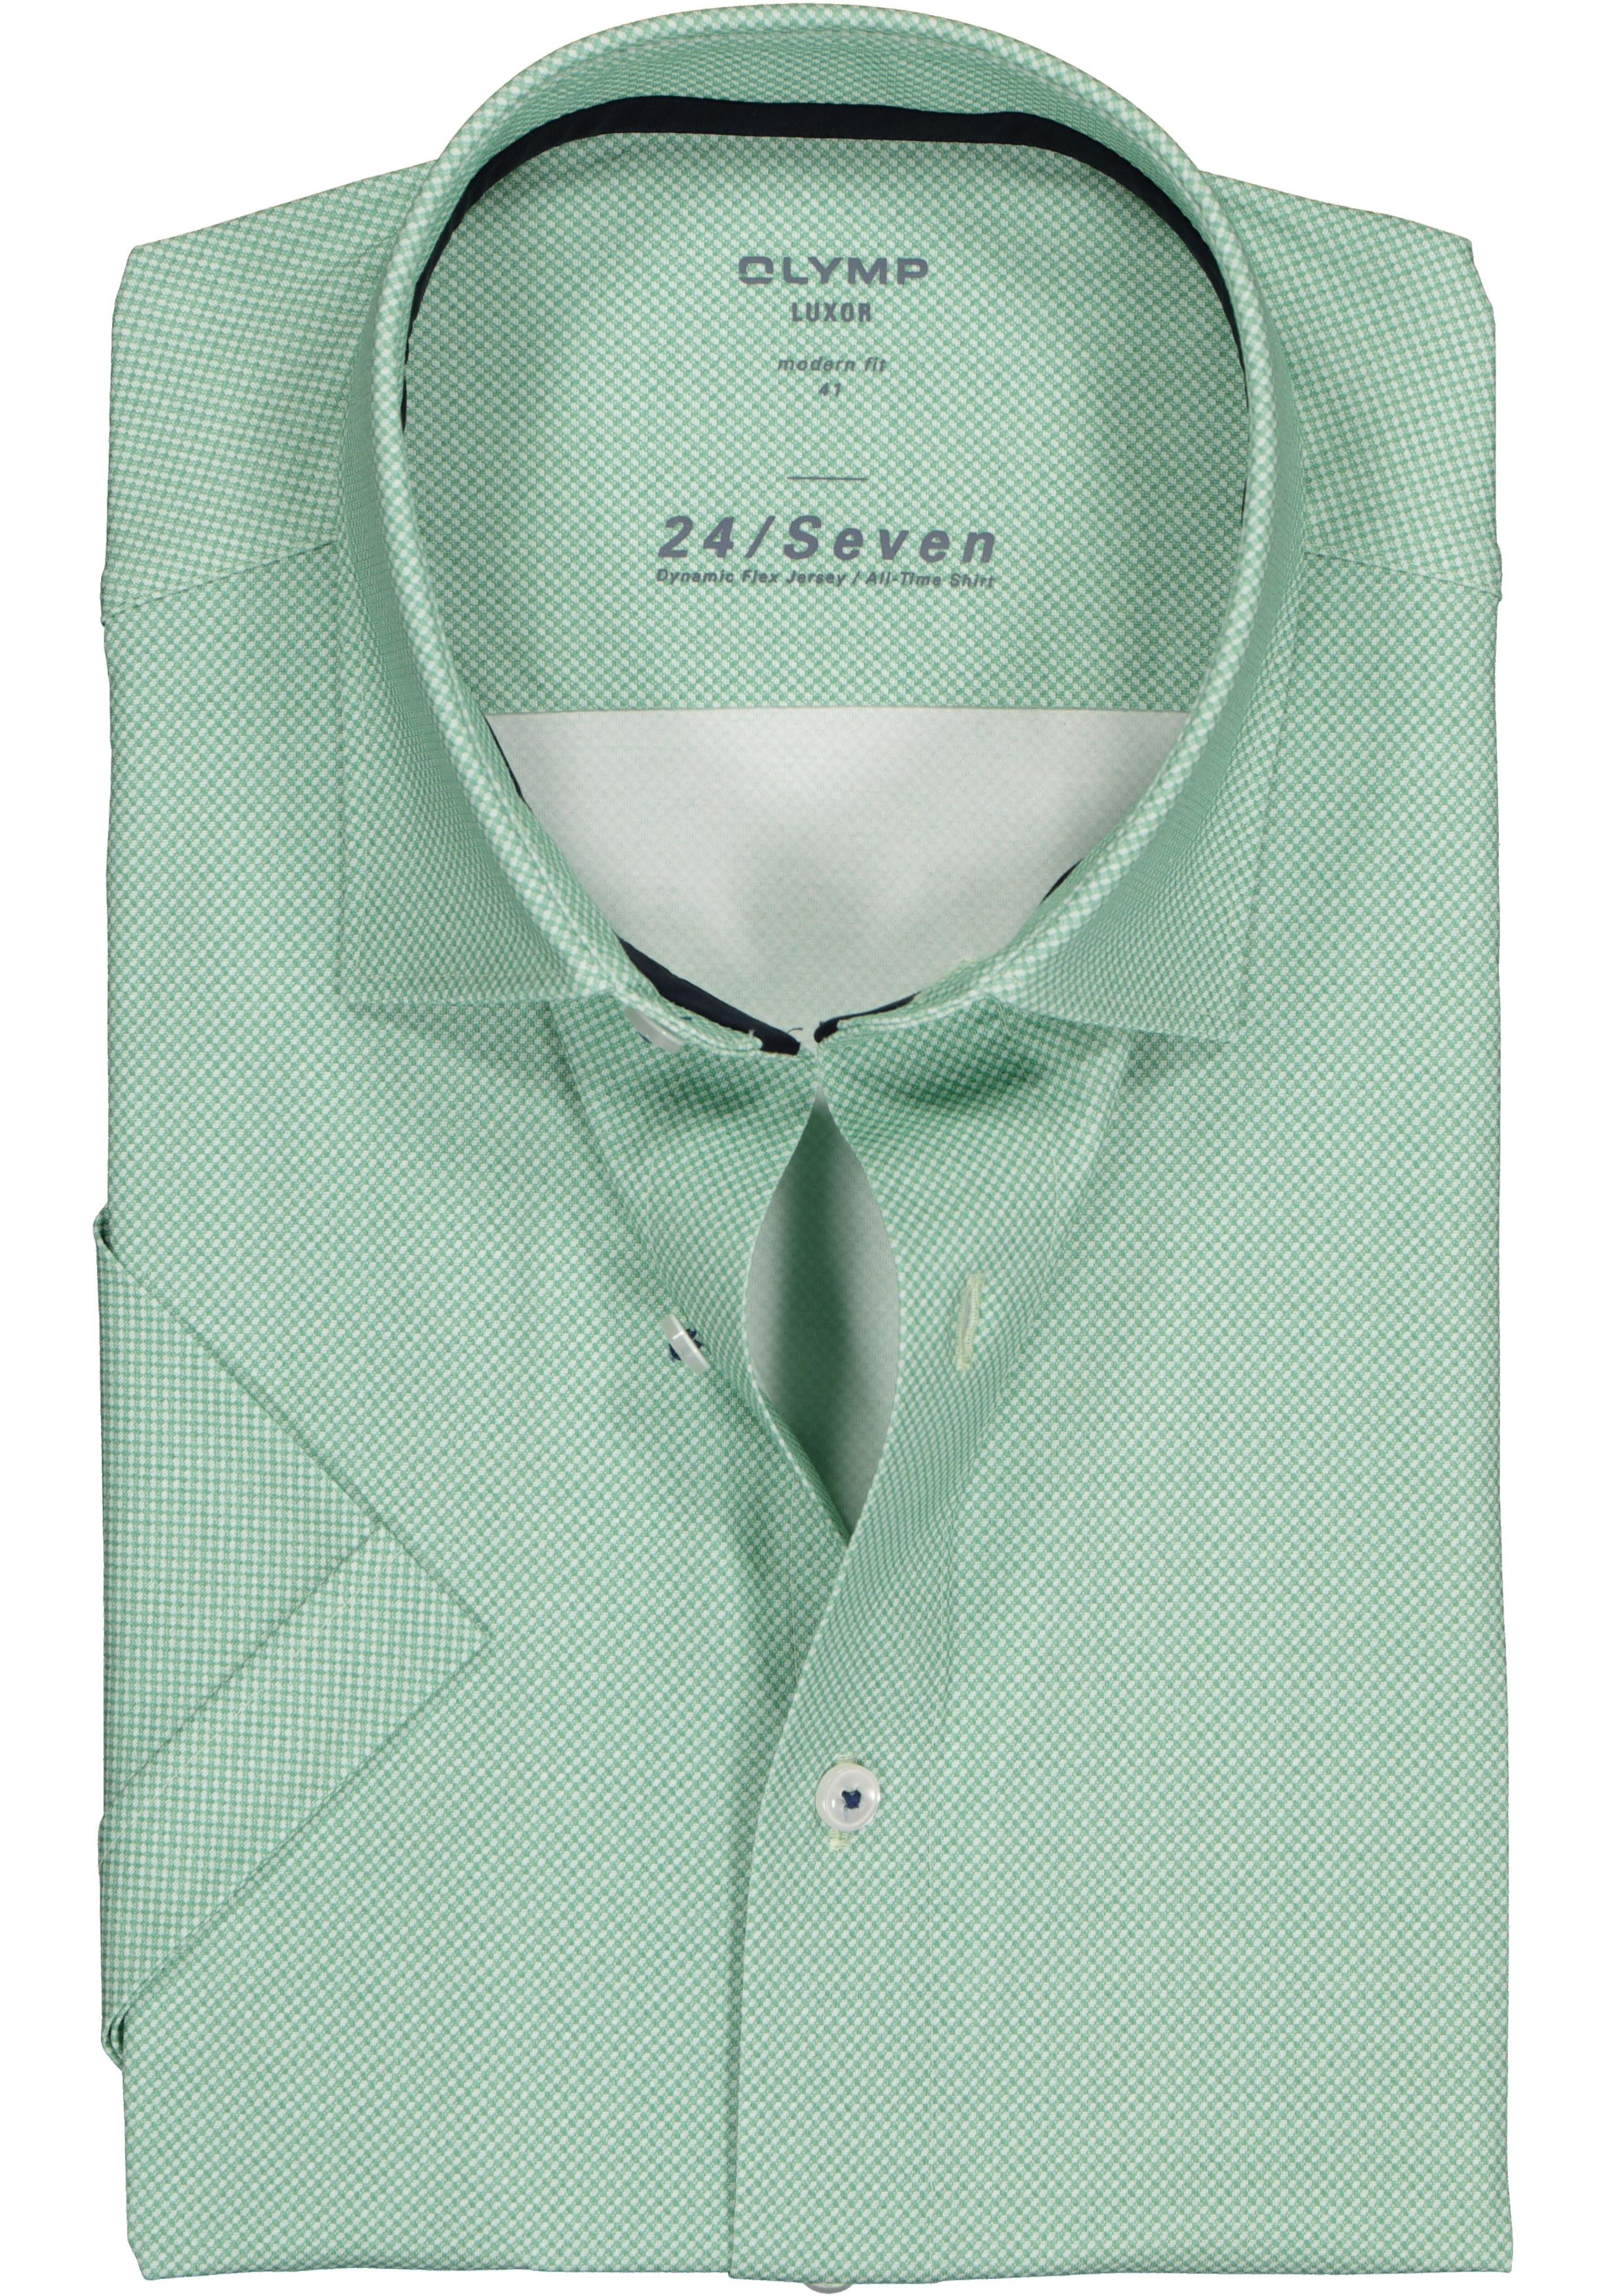 OLYMP Luxor 24/Seven modern fit overhemd, korte mouw, groen tricot mini dessin